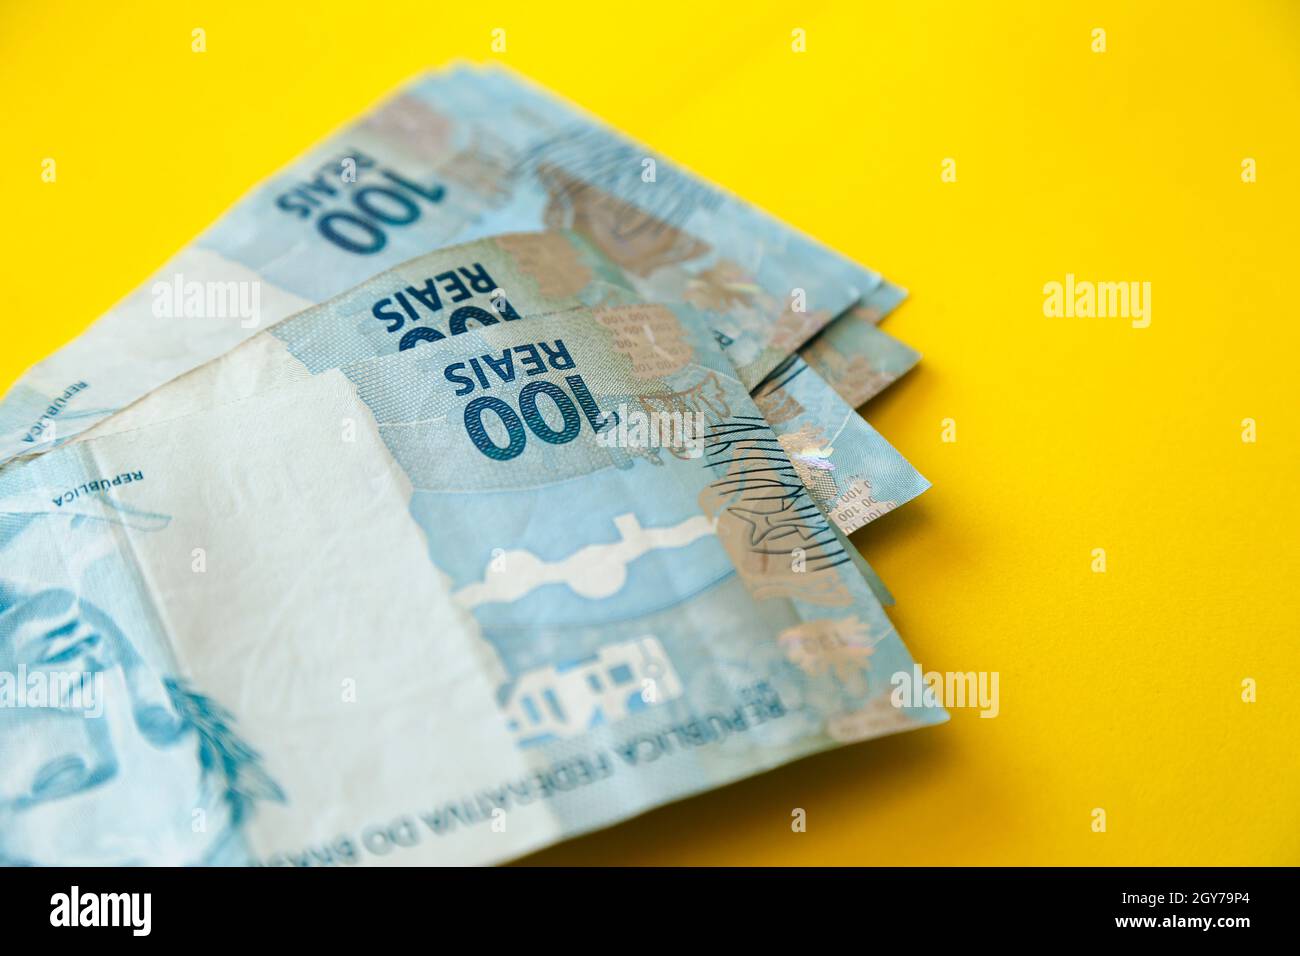 argent du brésil empilé sur la surface jaune - plusieurs centaines des factures réelles Banque D'Images